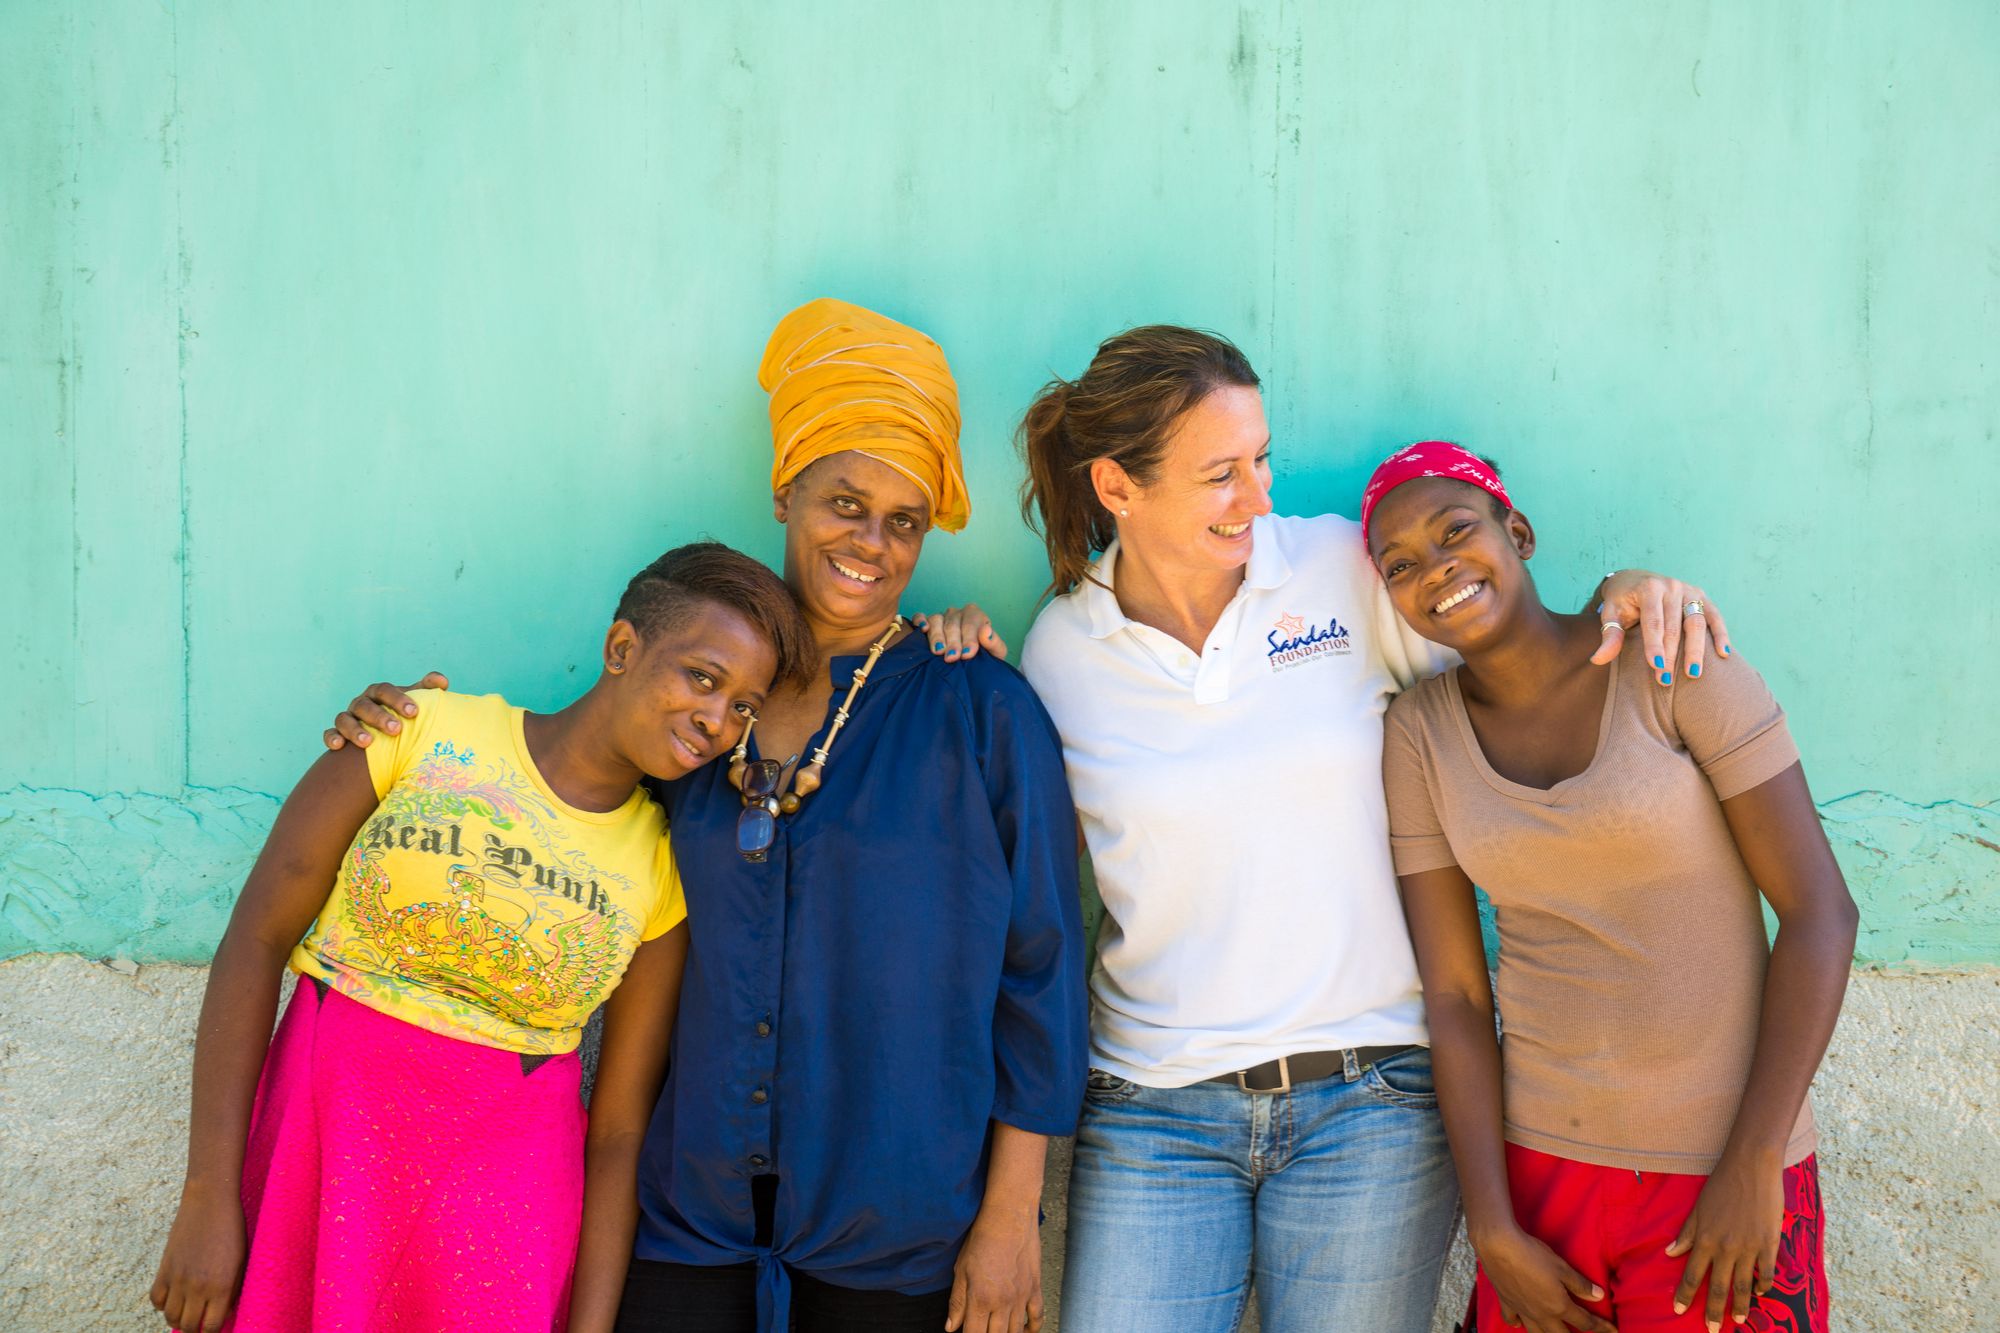 Aidez les femmes en situation de précarité aux Caraïbes grâce à vos dons de produits hygiéniques.